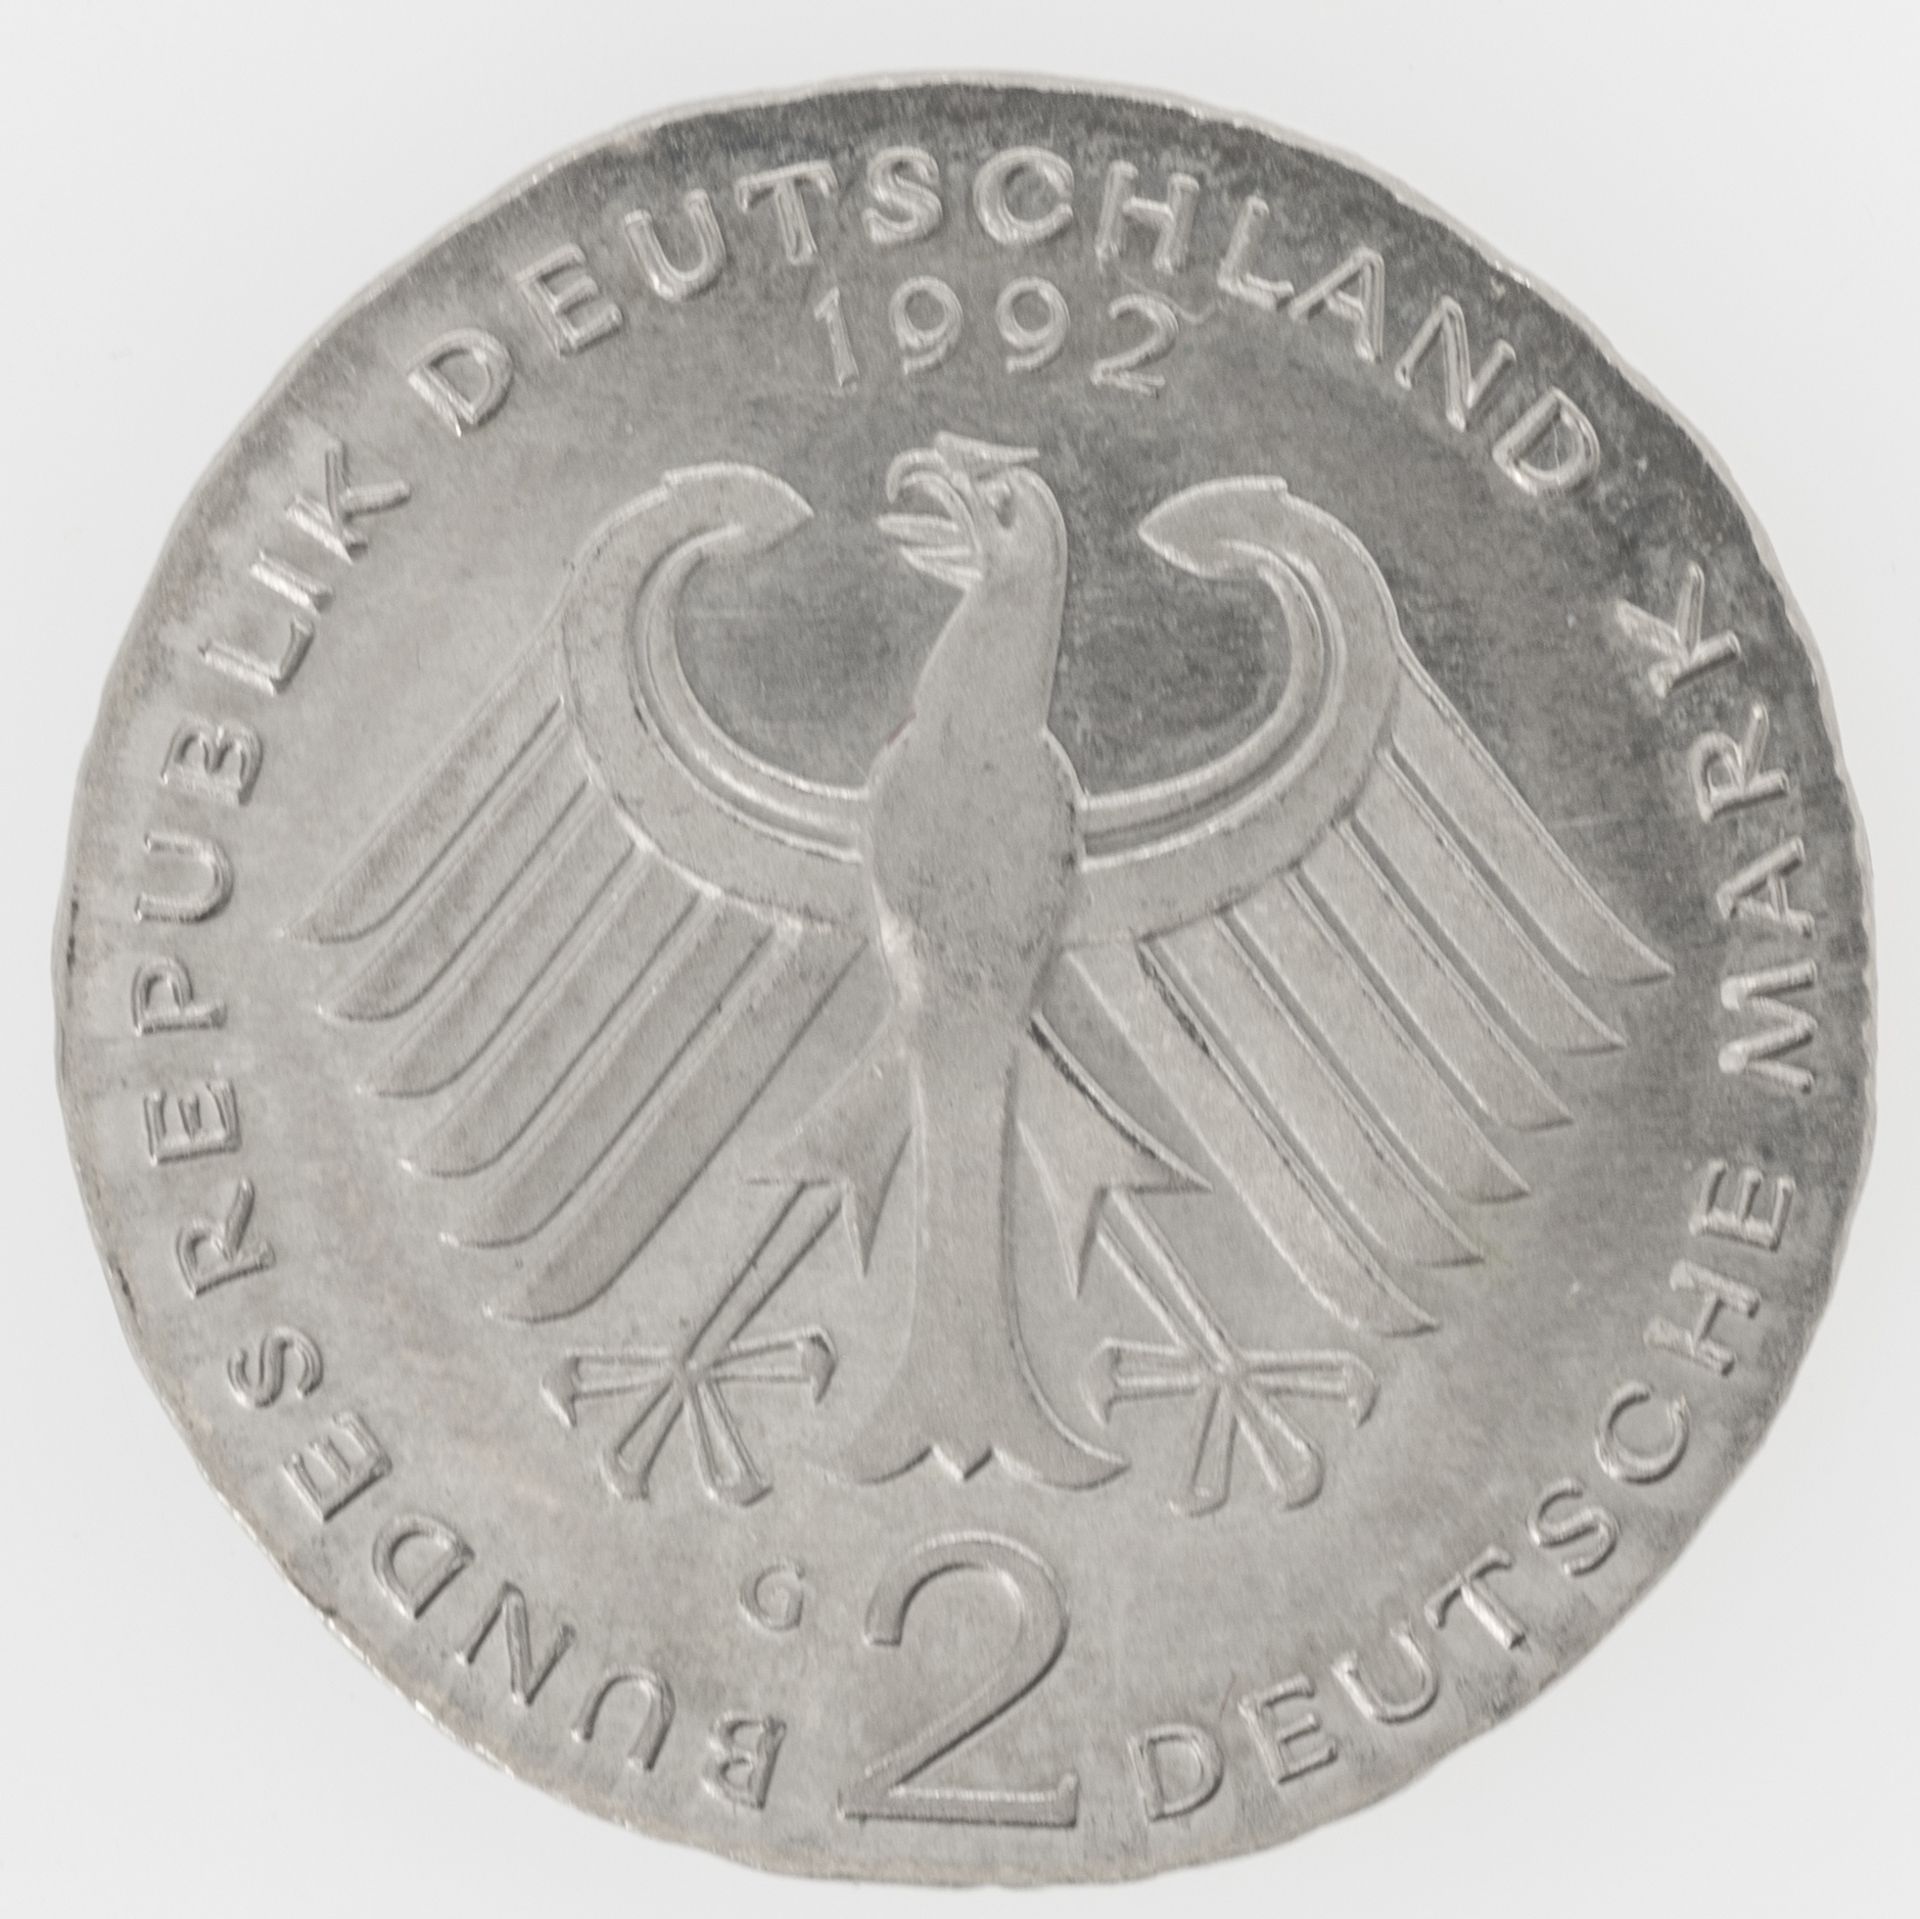 BRD 1988, 2.- DM - Münze, Fehlprägung: Schrötling zu dünn und zu klein (ohne Rand). - Bild 2 aus 2